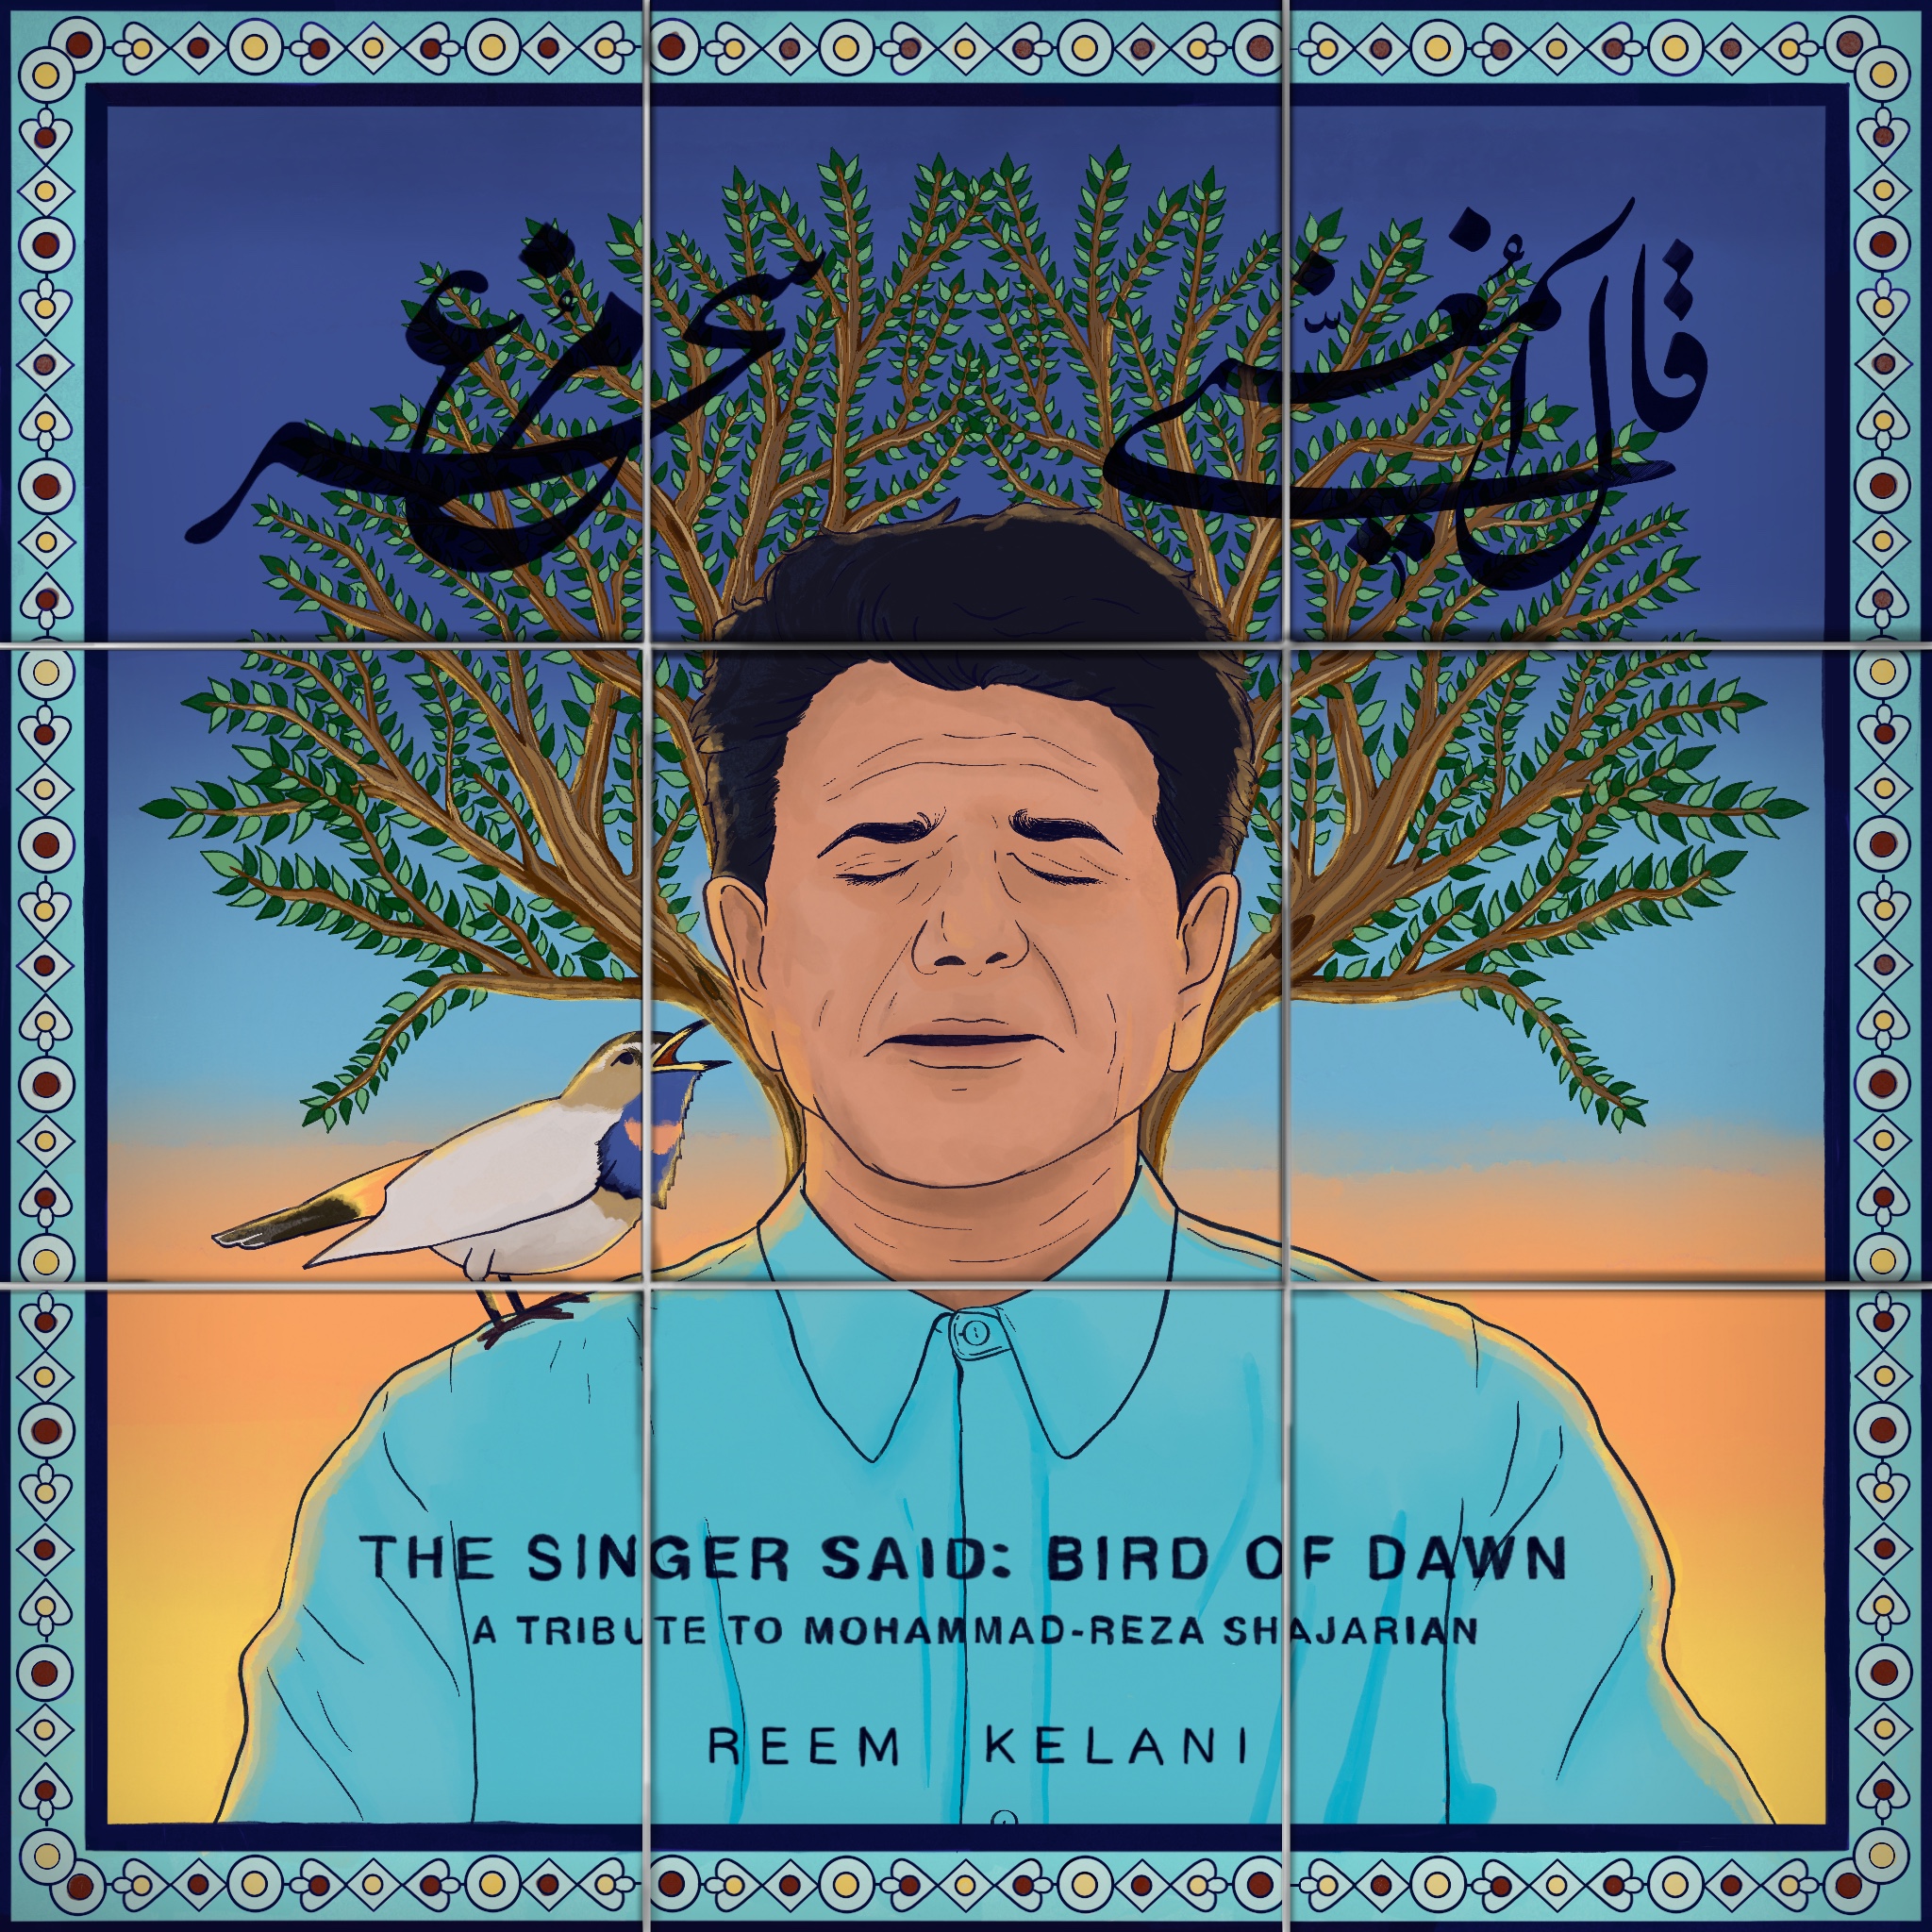 الغلاف الإنكليزي لألبوم المغنية ومؤلفة الأغاني الفلسطينية البريطانية ريم الكيلاني: "قال المغني: طائر السحَر". Cover of Reem Kelani's two-song EP "The Singer Said: Bird of Dawn" (source: reemkelani.bandcamp.com)